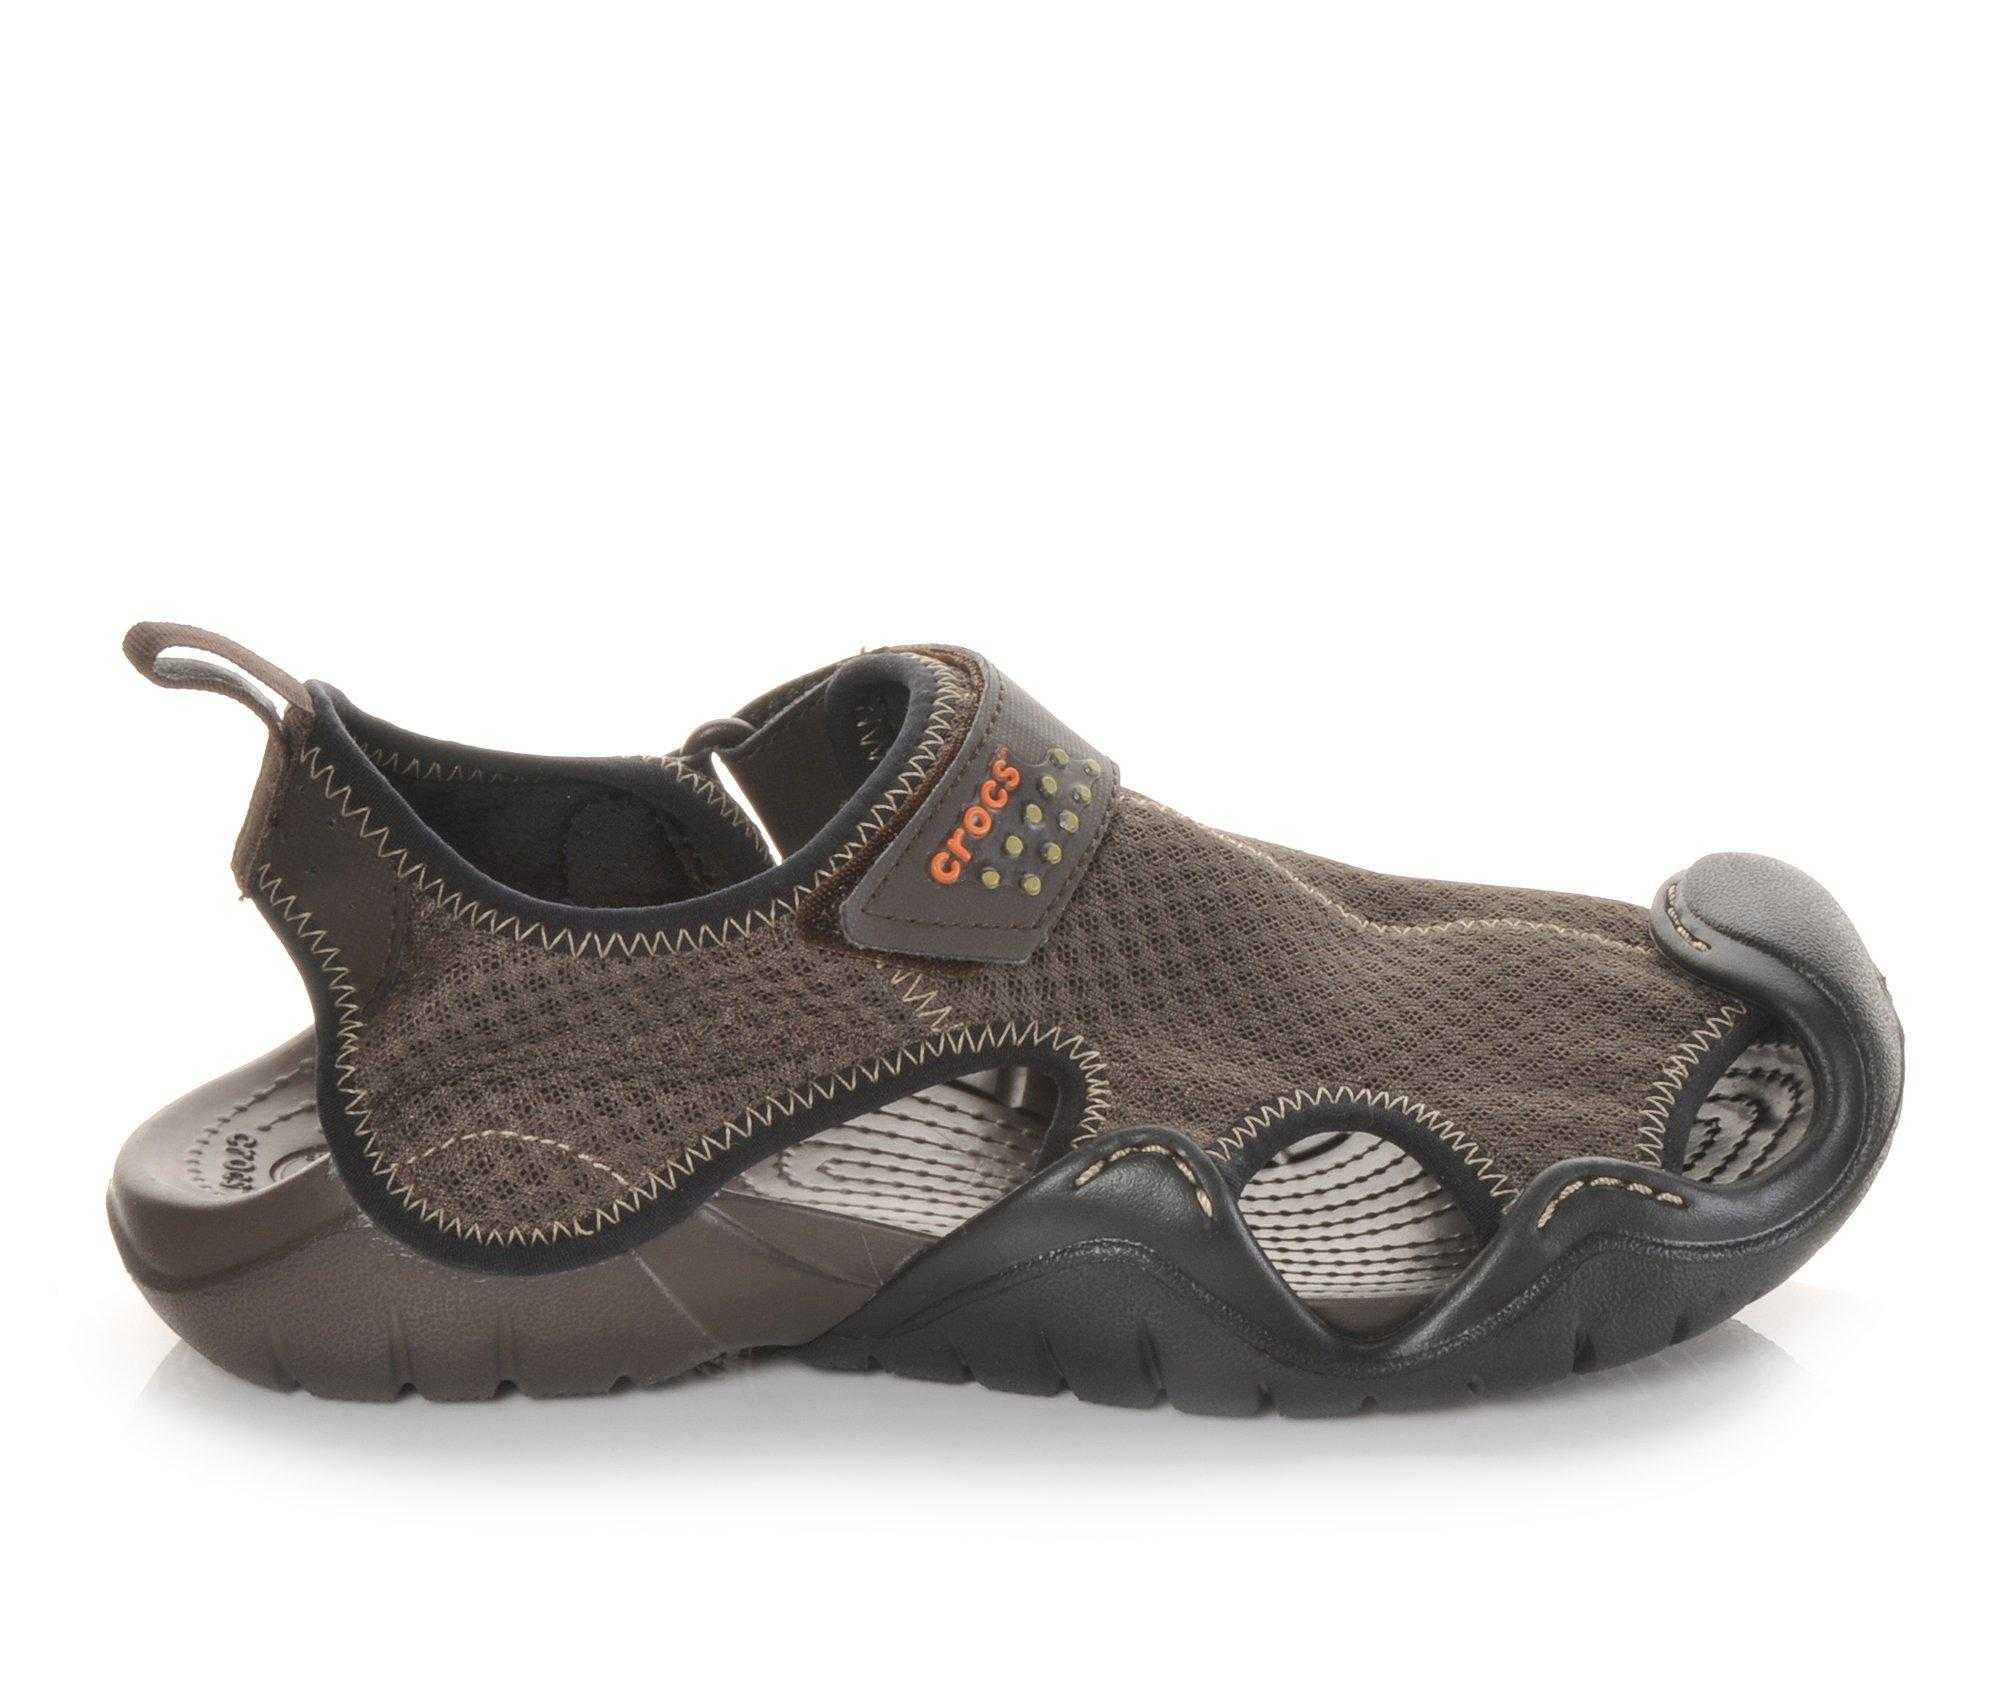 Crocs Men’s Swiftwater Mesh Sandal: Kayak Fishing